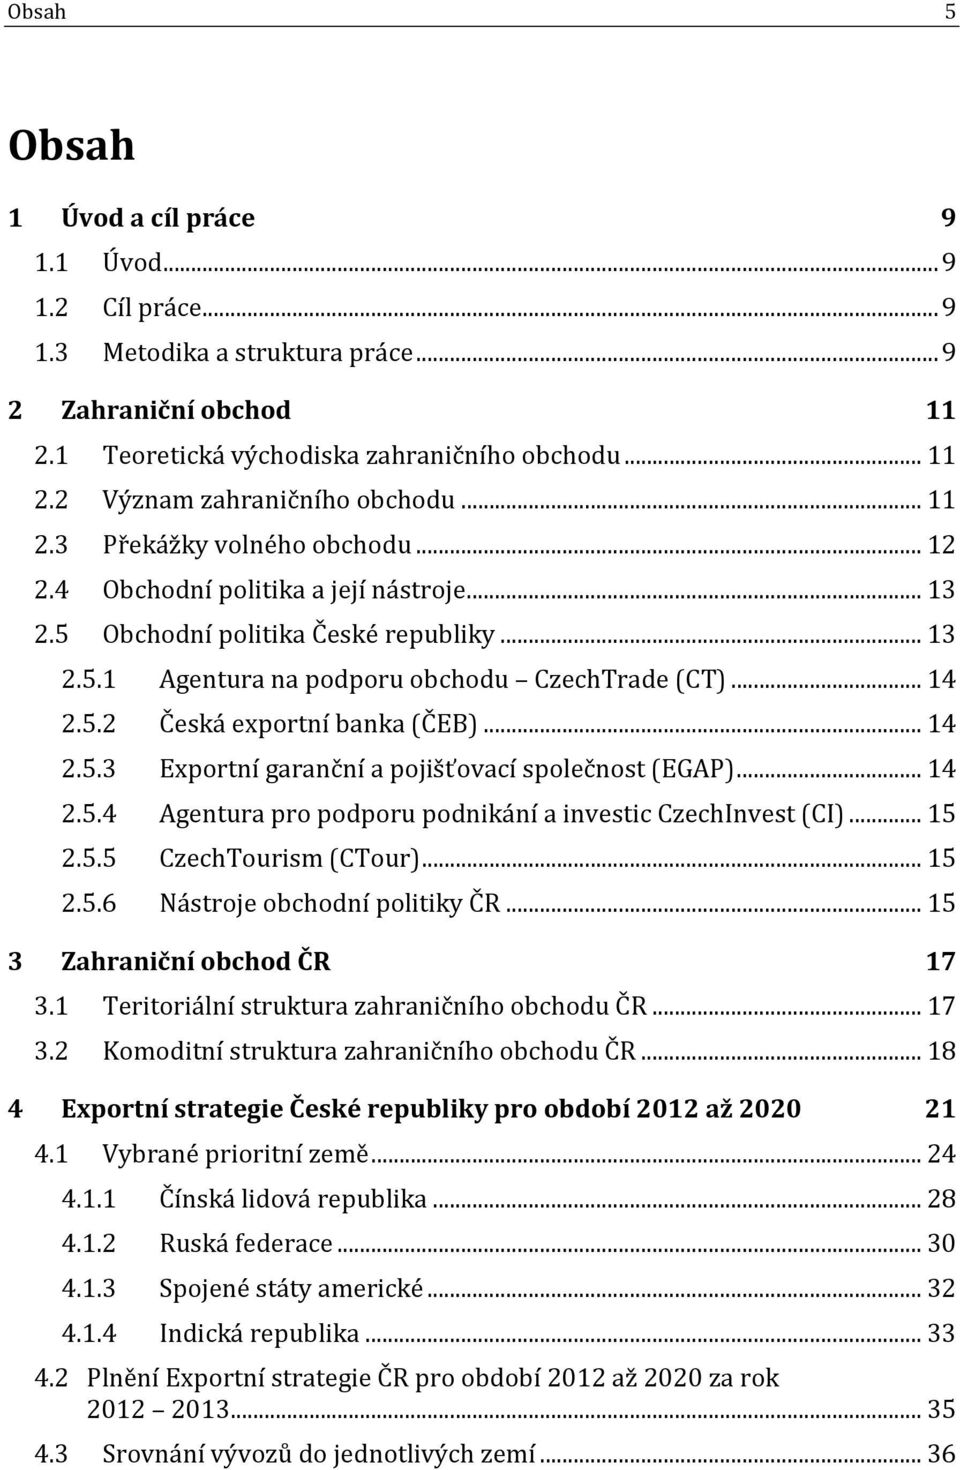 .. 14 2.5.3 Exportní garanční a pojišťovací společnost (EGAP)... 14 2.5.4 Agentura pro podporu podnikání a investic CzechInvest (CI)... 15 2.5.5 CzechTourism (CTour)... 15 2.5.6 Nástroje obchodní politiky ČR.